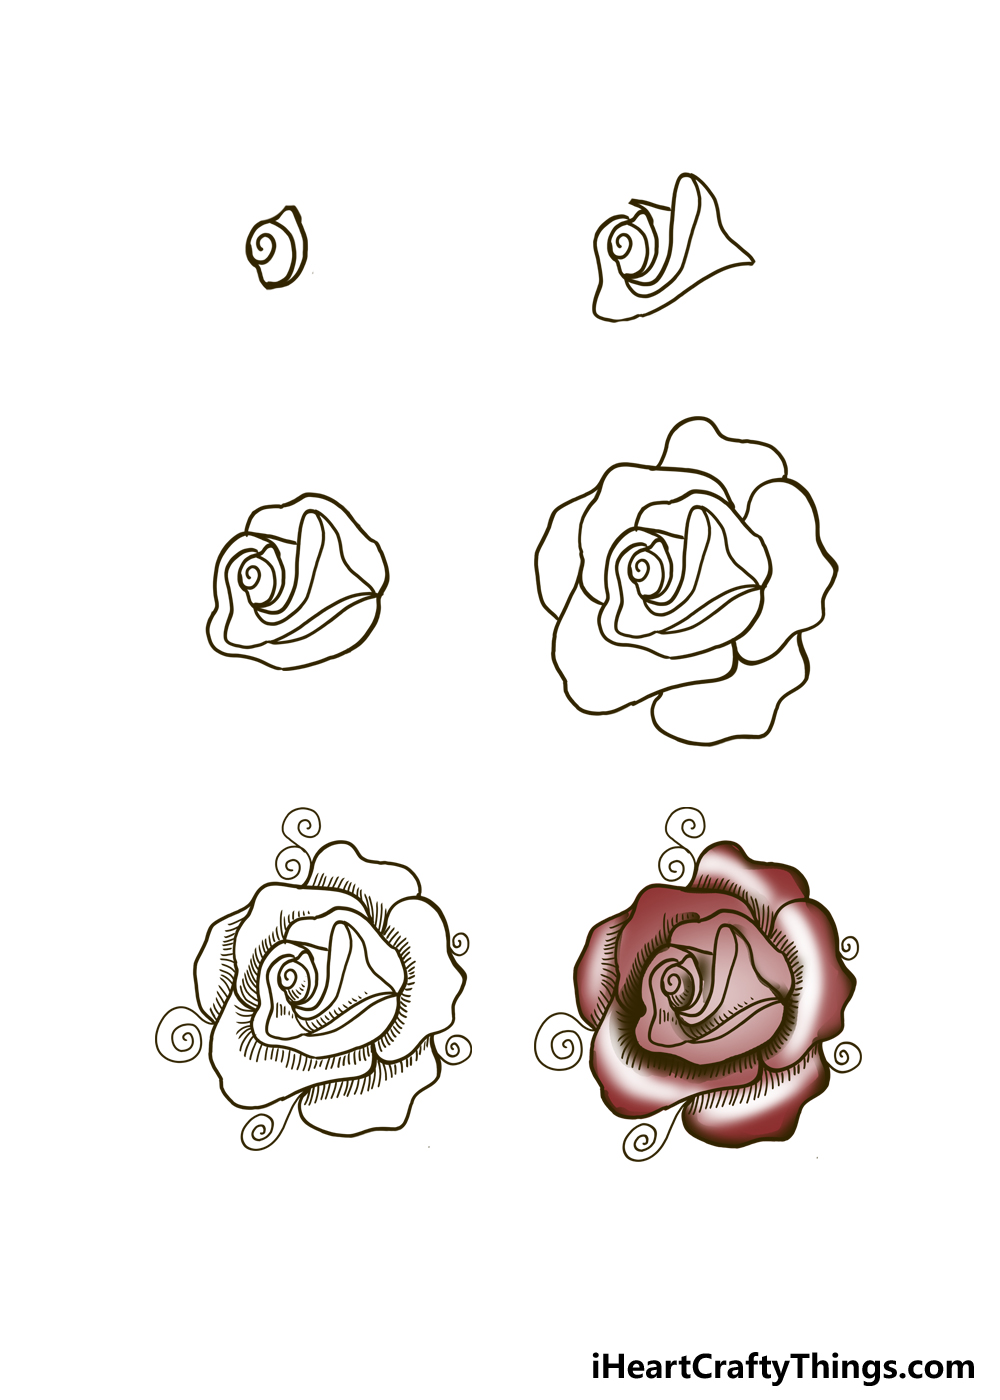 Chọn lựa Hình xăm hoa hồng tam giác độc đáo và tôn lên vẻ đẹp nữ tính